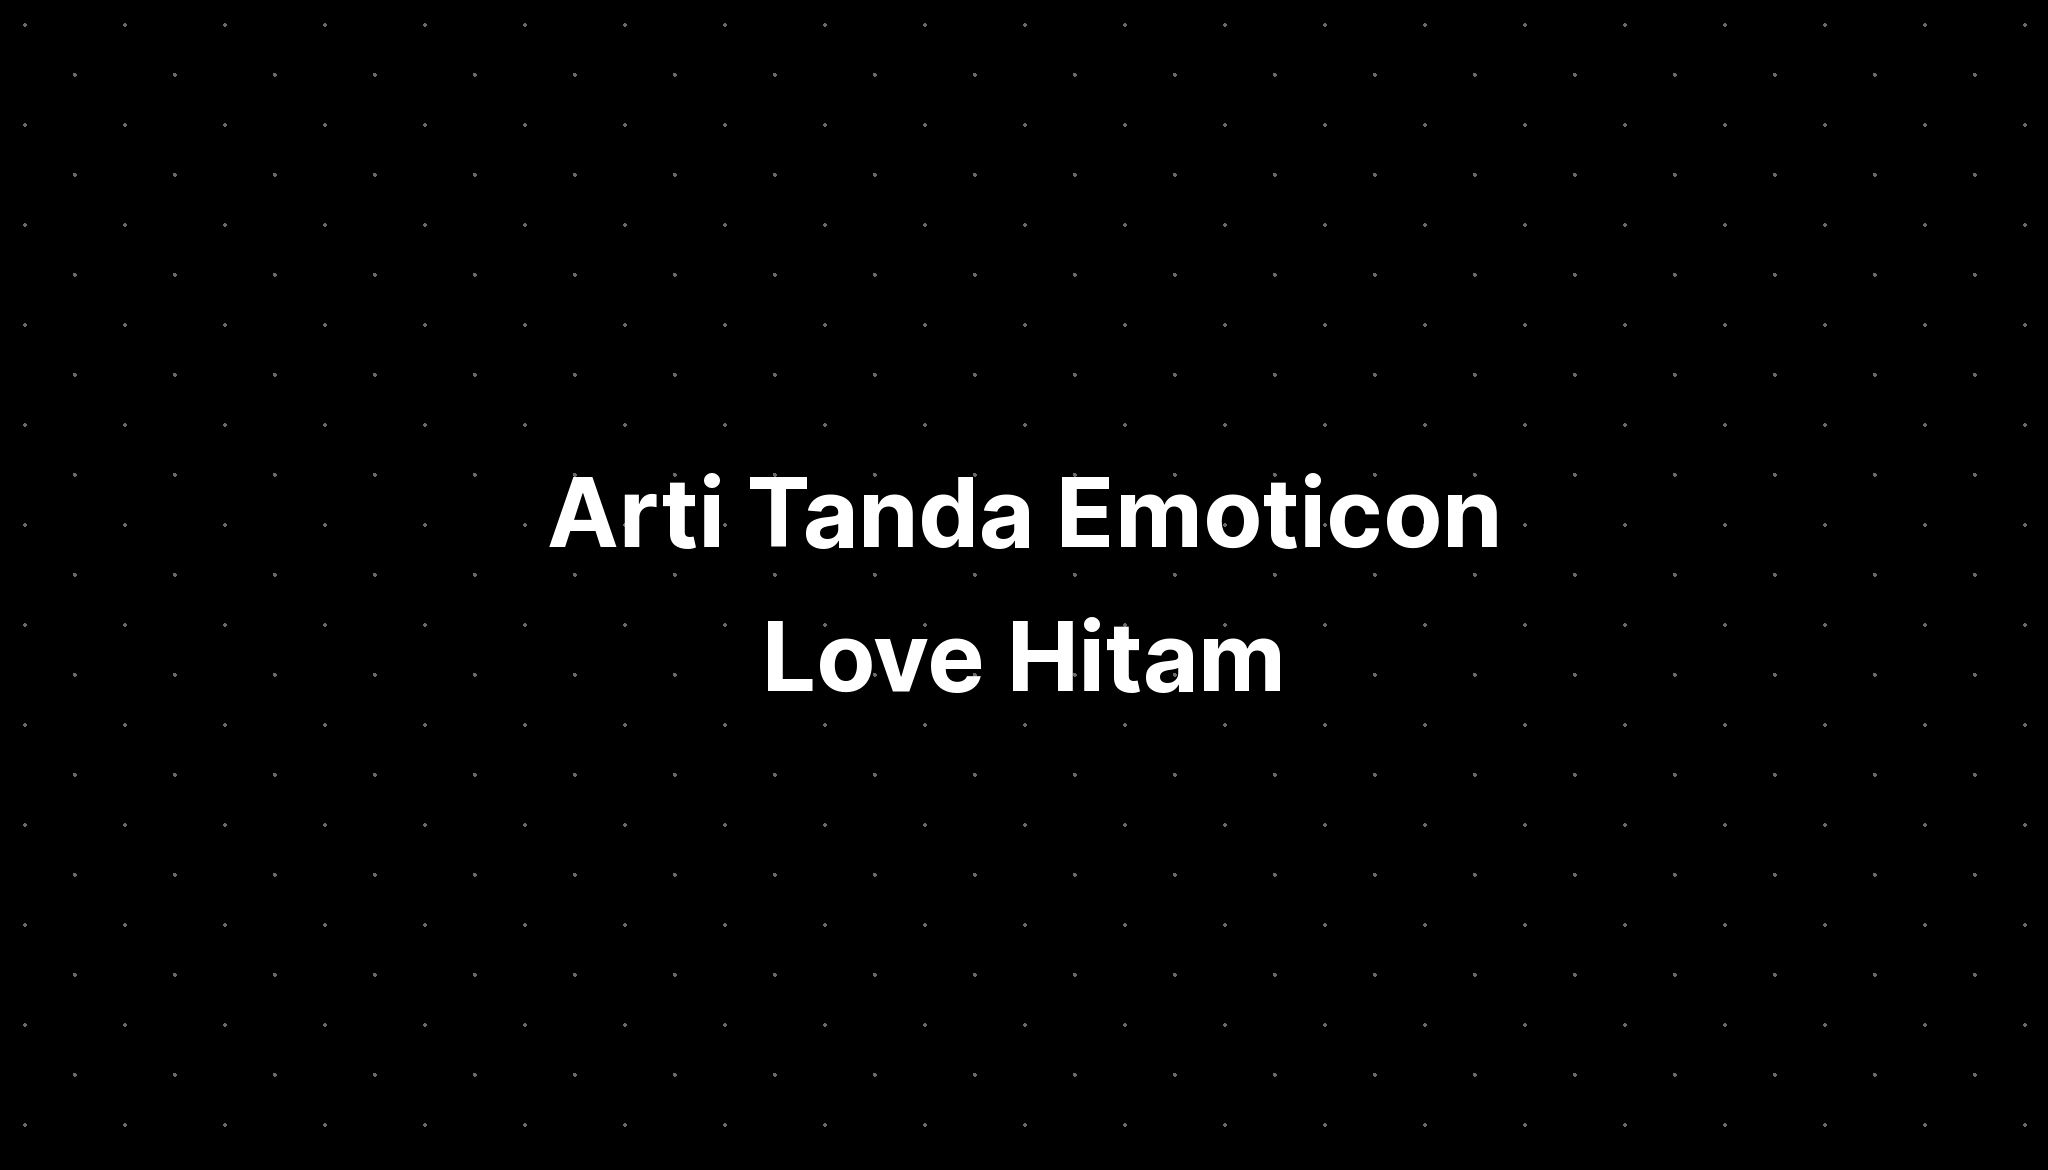 Arti Tanda Emoticon Love Hitam - IMAGESEE